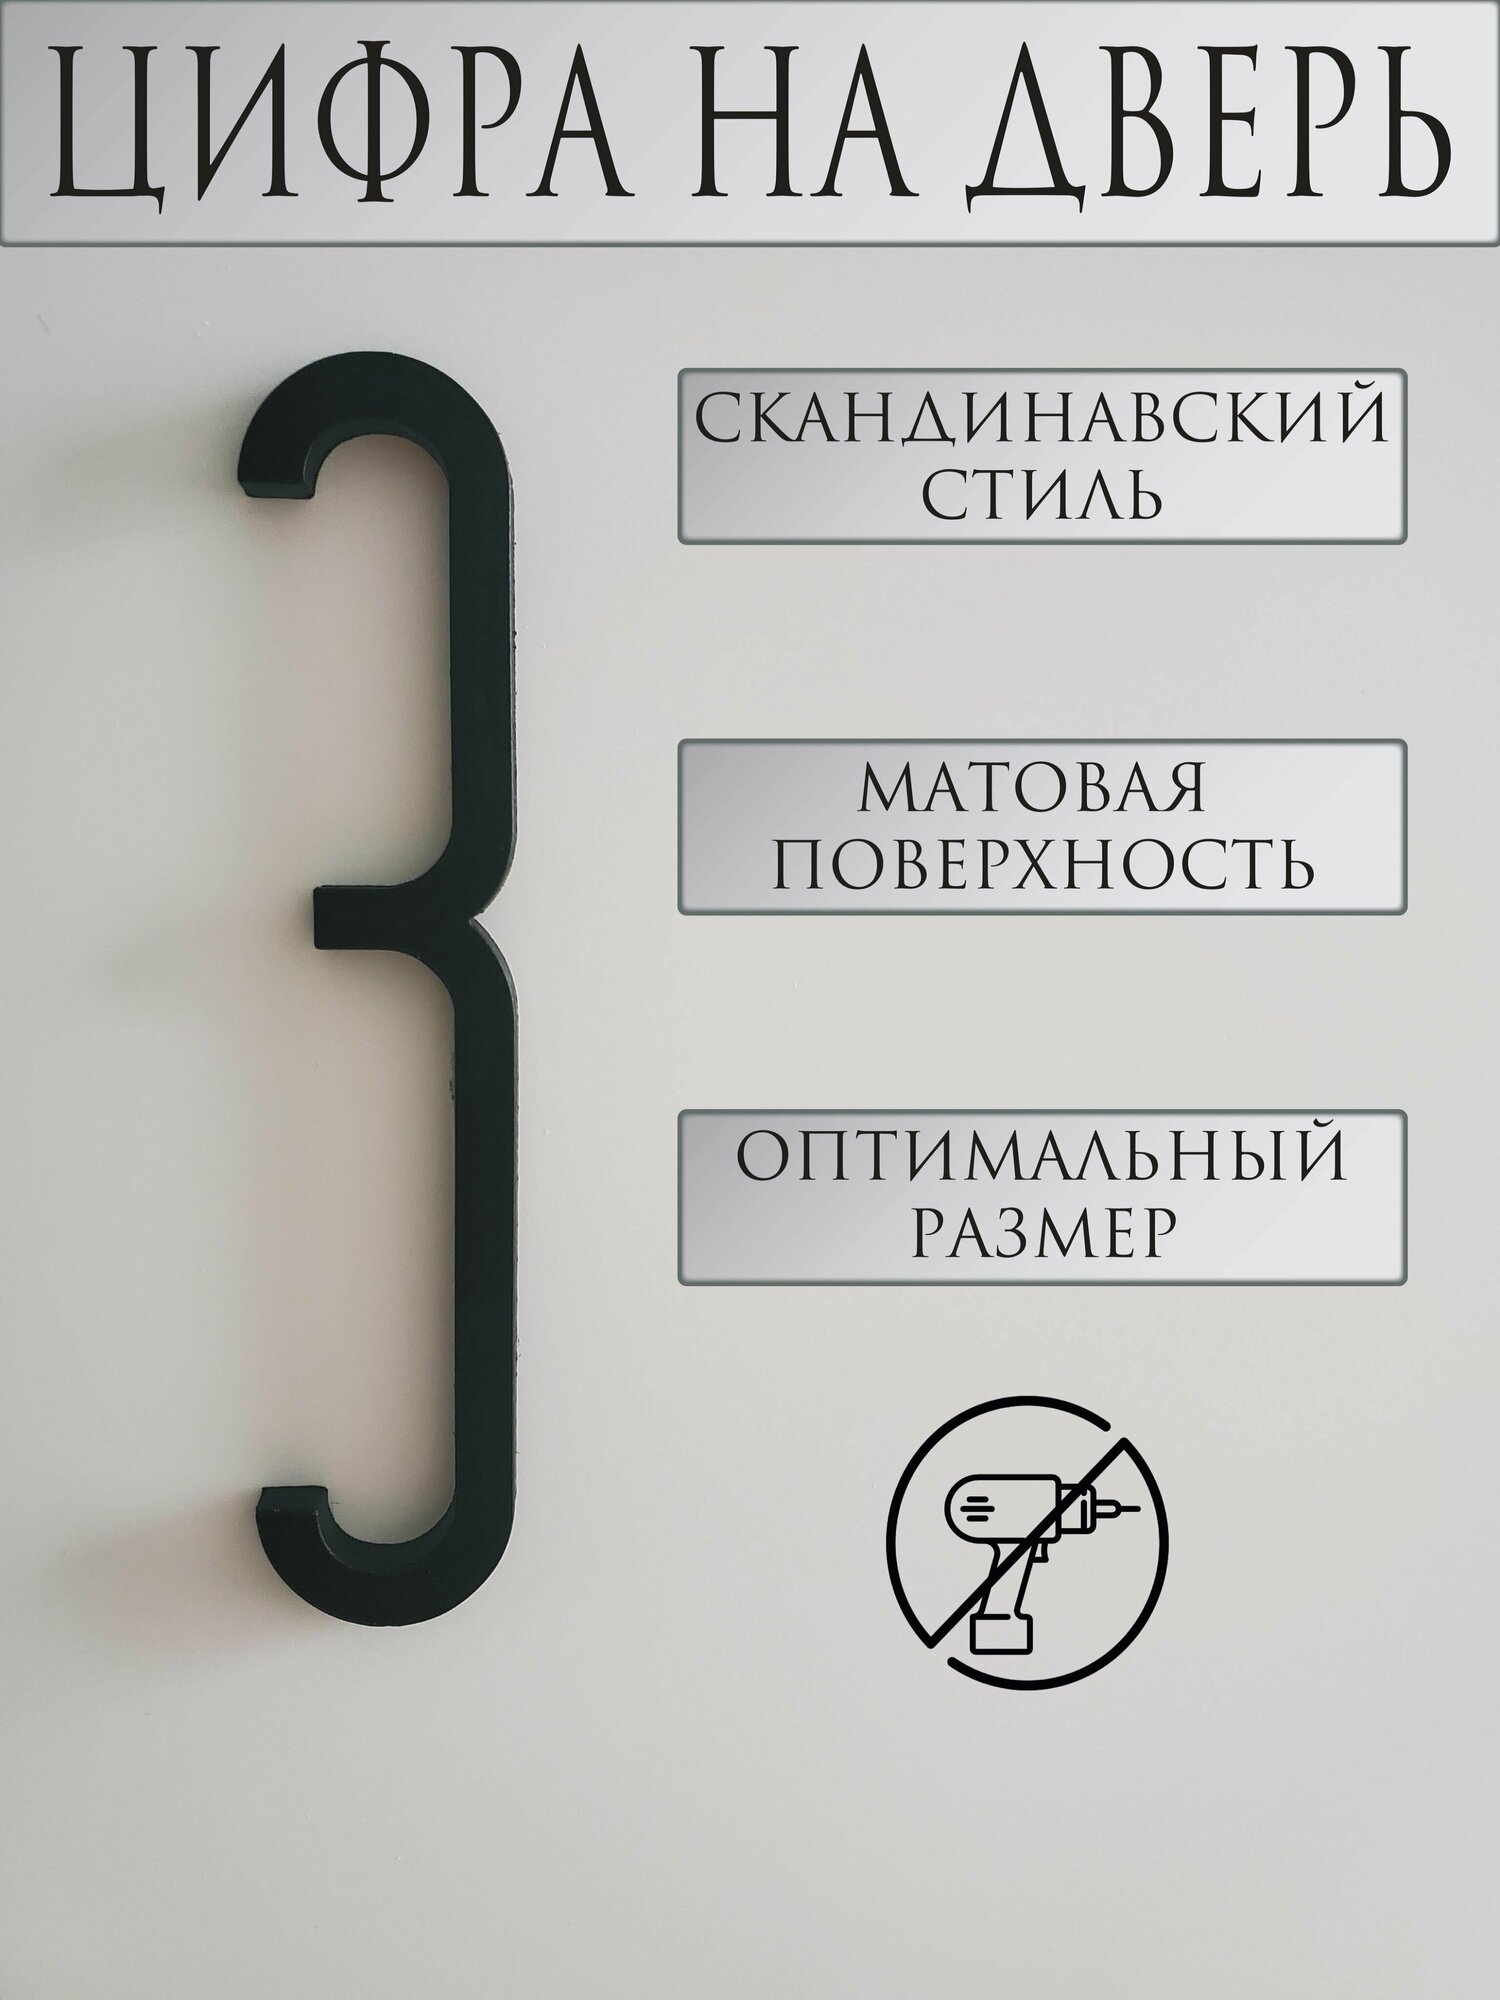 Цифра на дверь "3" в скандинавском стиле, черный